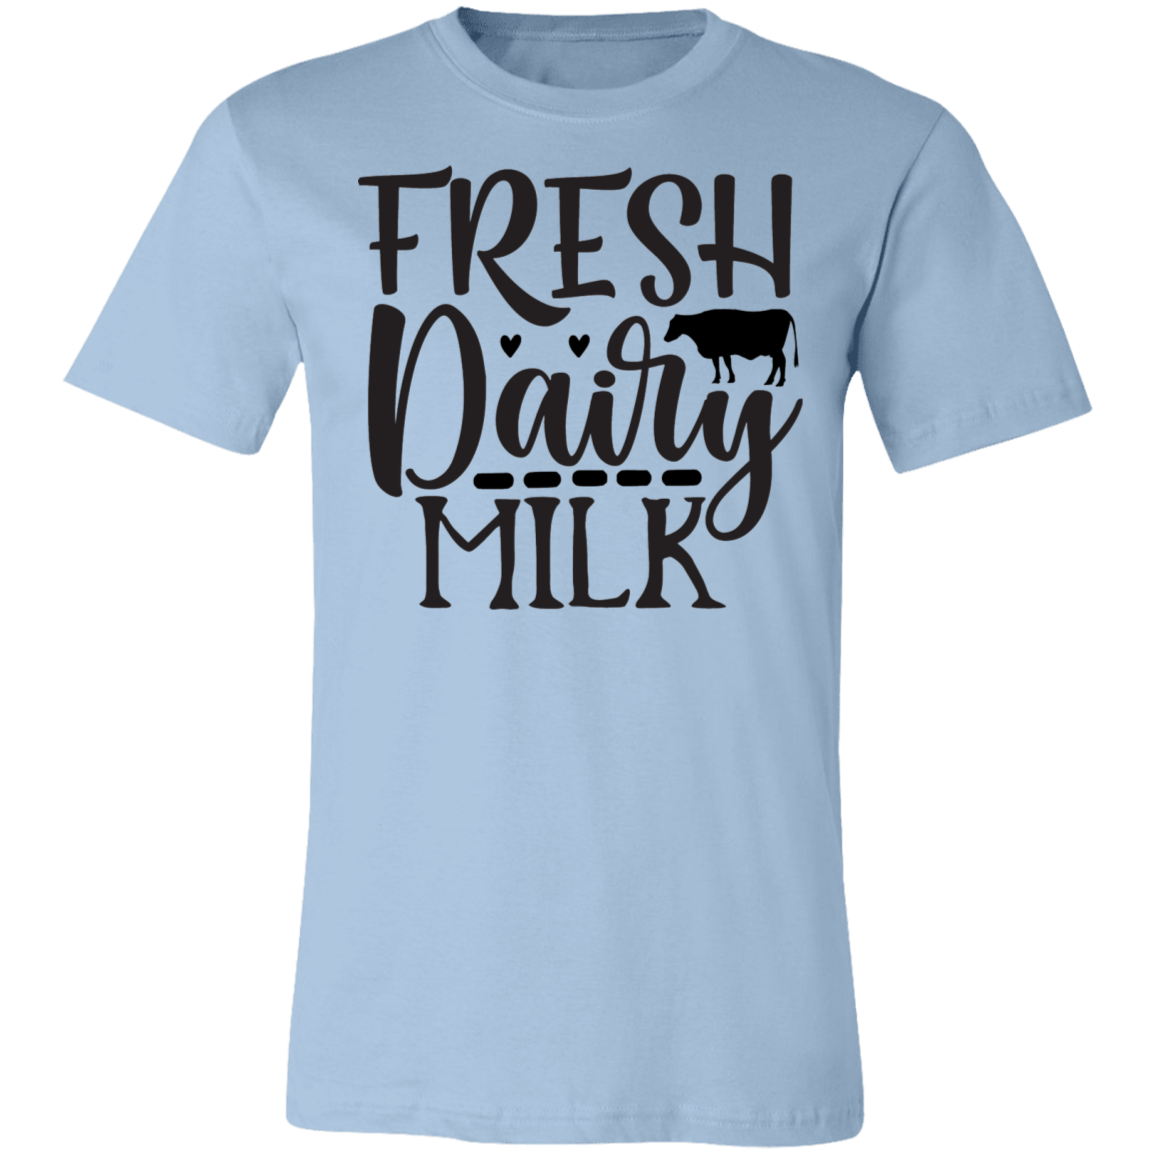 Fresh Dairy Milk Tee